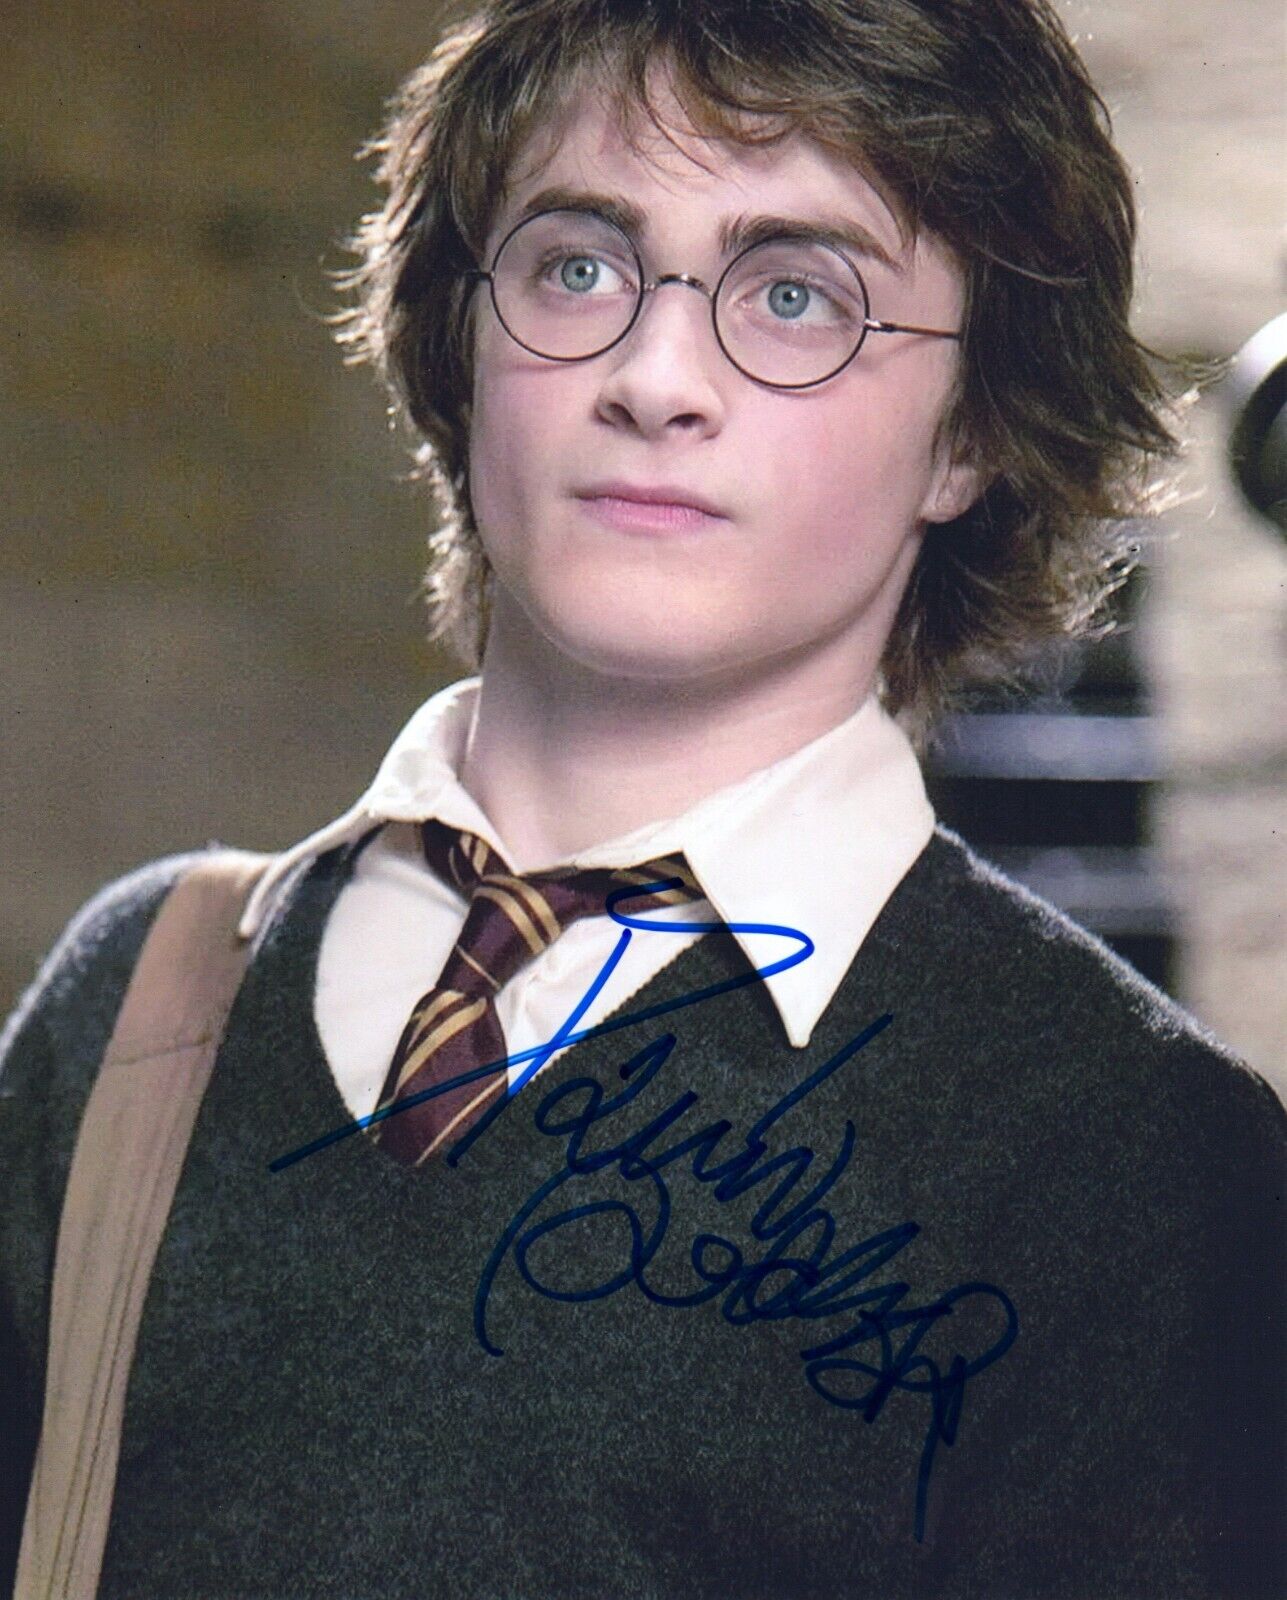 Daniel Radcliffe 8x10 Signed Photo Guaranteed Authentic COA